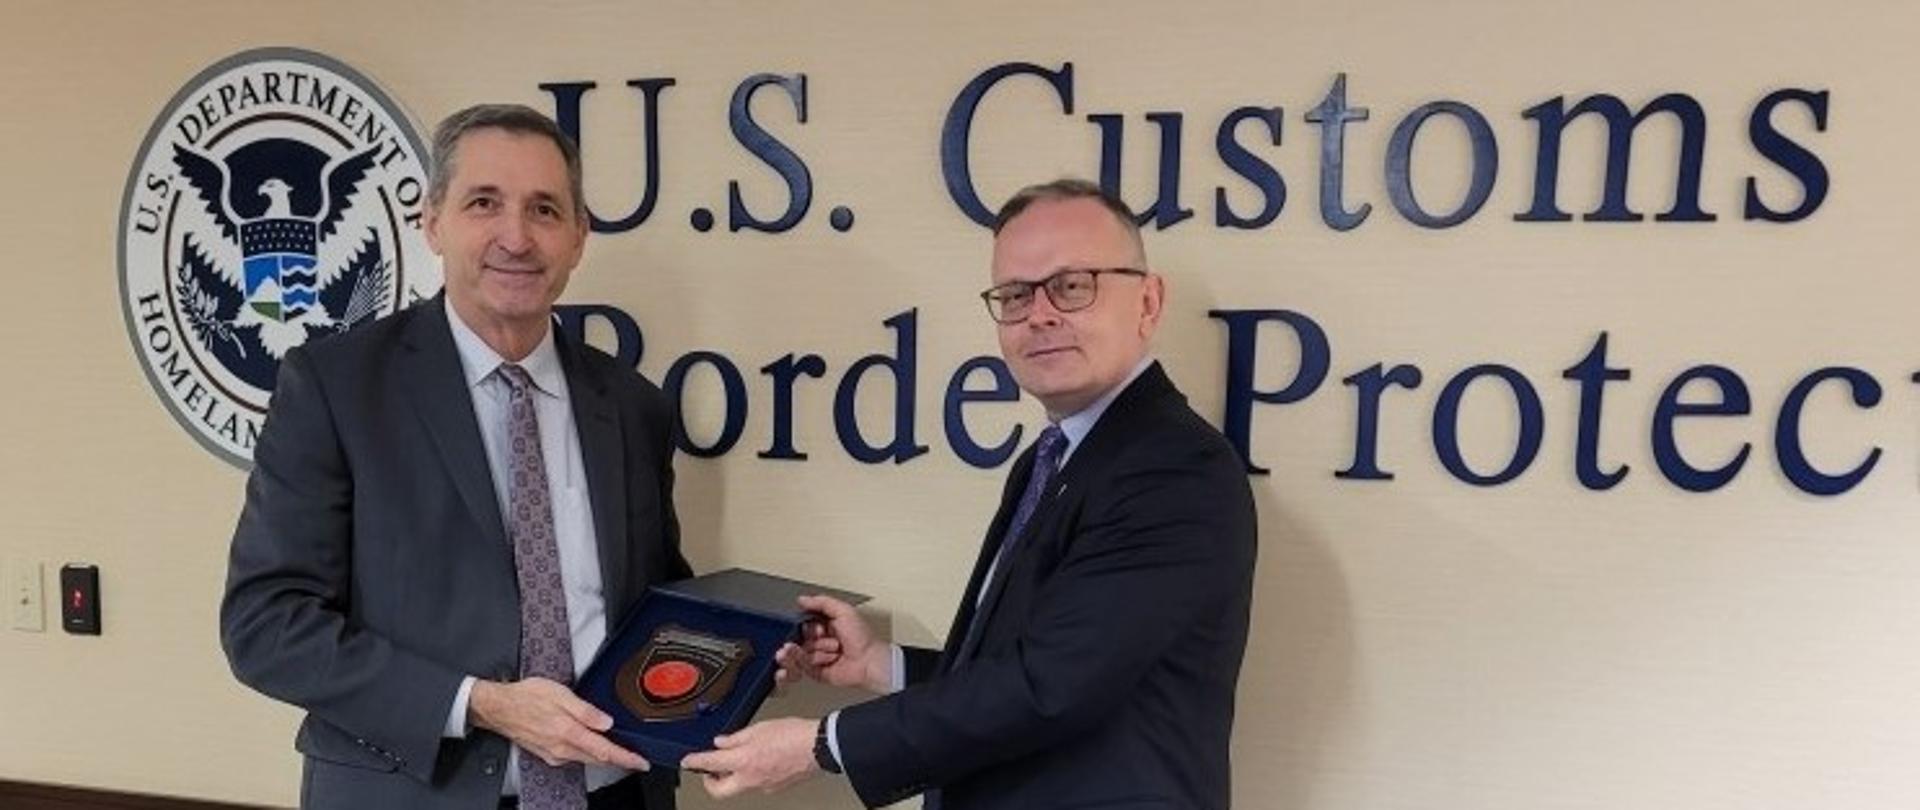 Wiceminister finansów Mariusz Gojny i zastępca Komisarza CBP (Customs and Border Protection) Benjamin Huffman pozują do zdjęcia